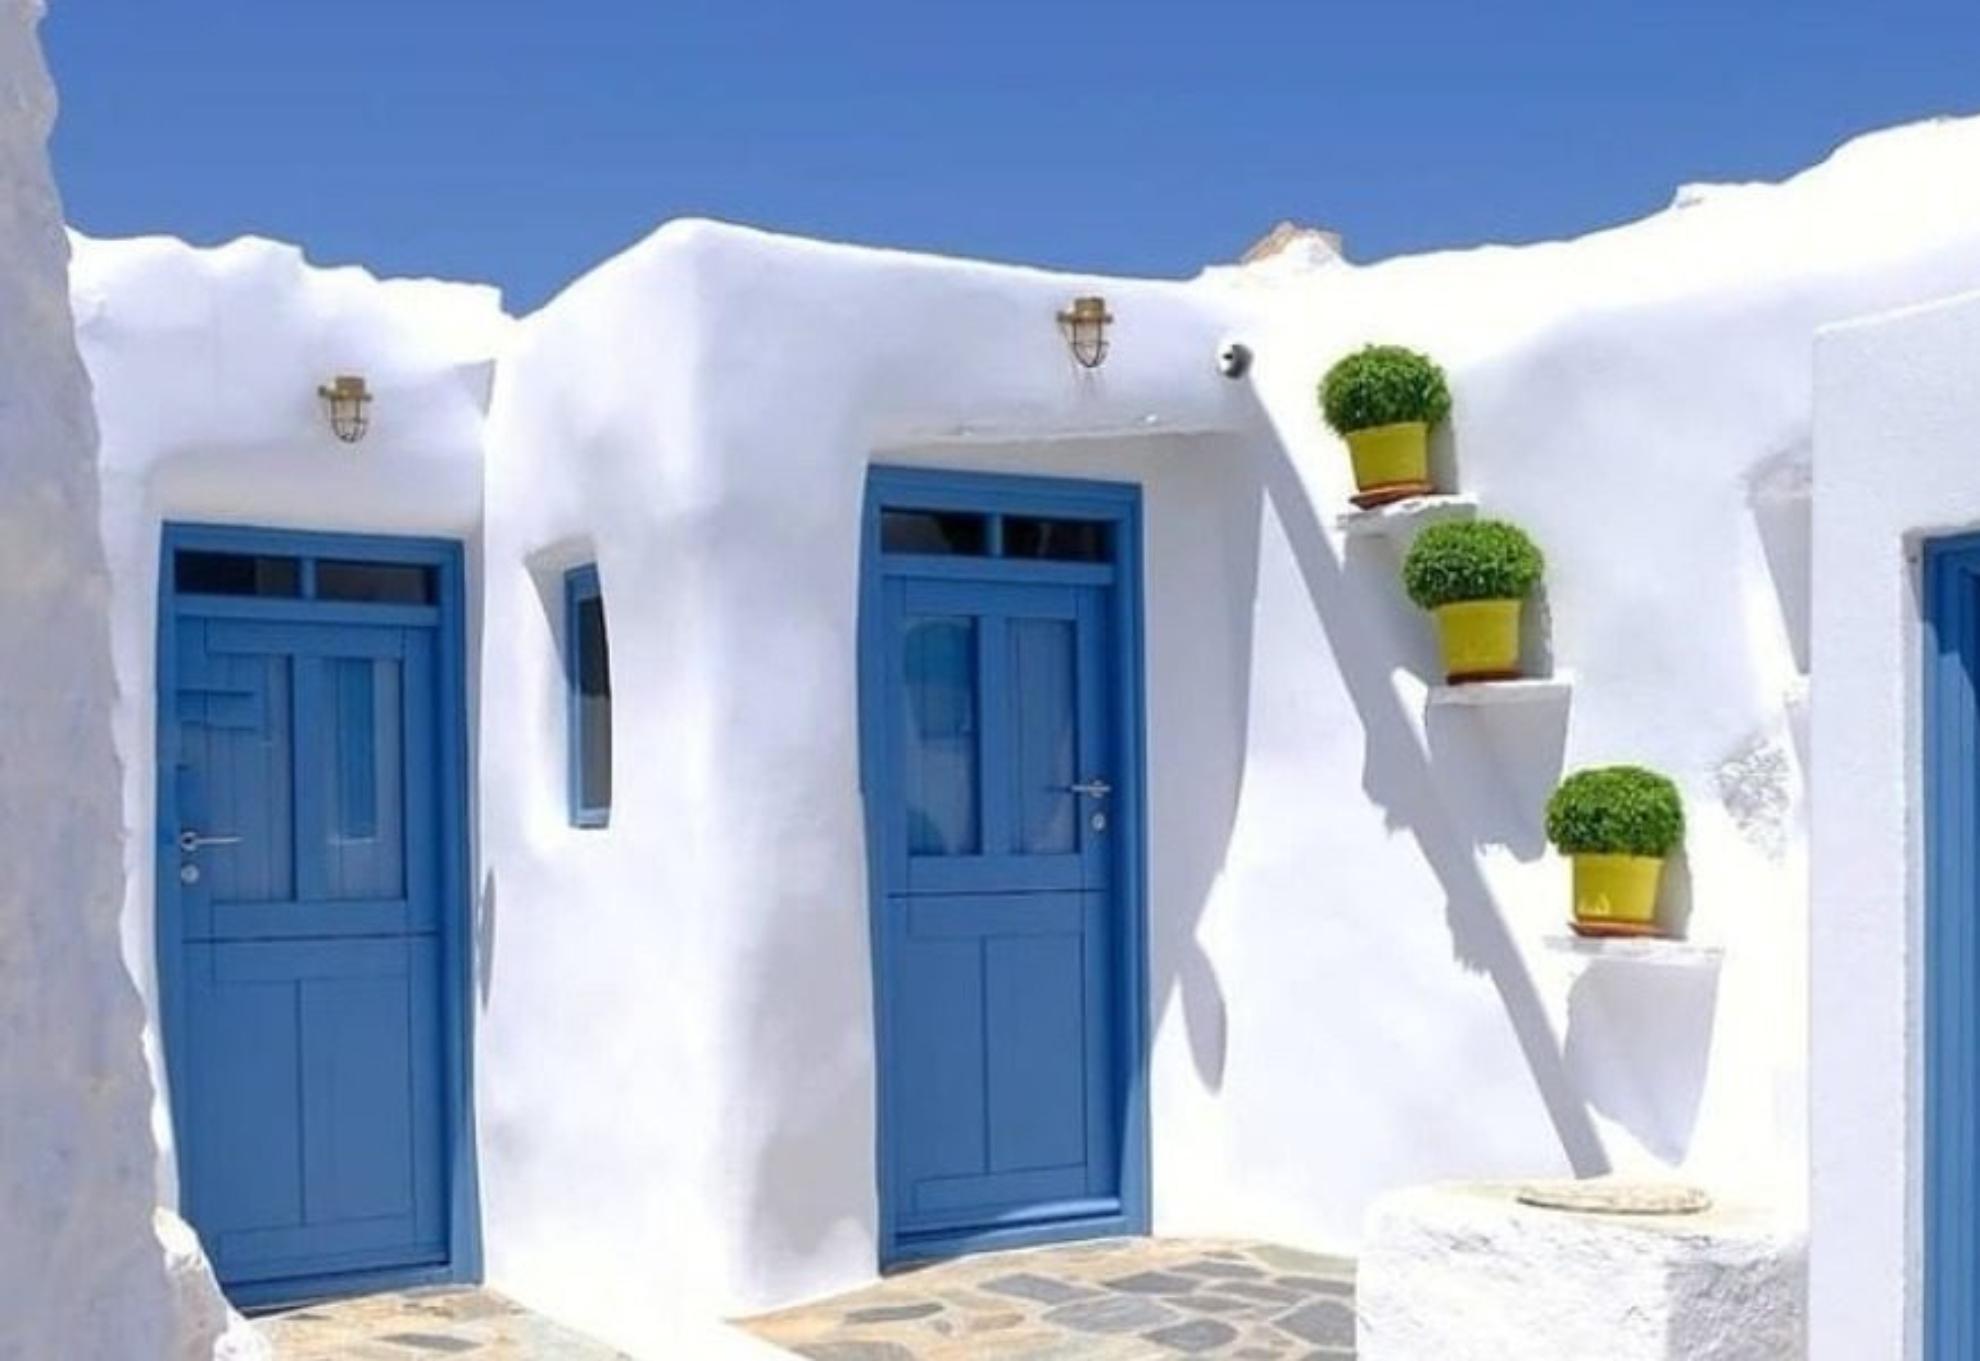 10 Υπέροχα ελληνικά νησιά ιδανικά για διακοπές χωρίς αυτοκίνητο